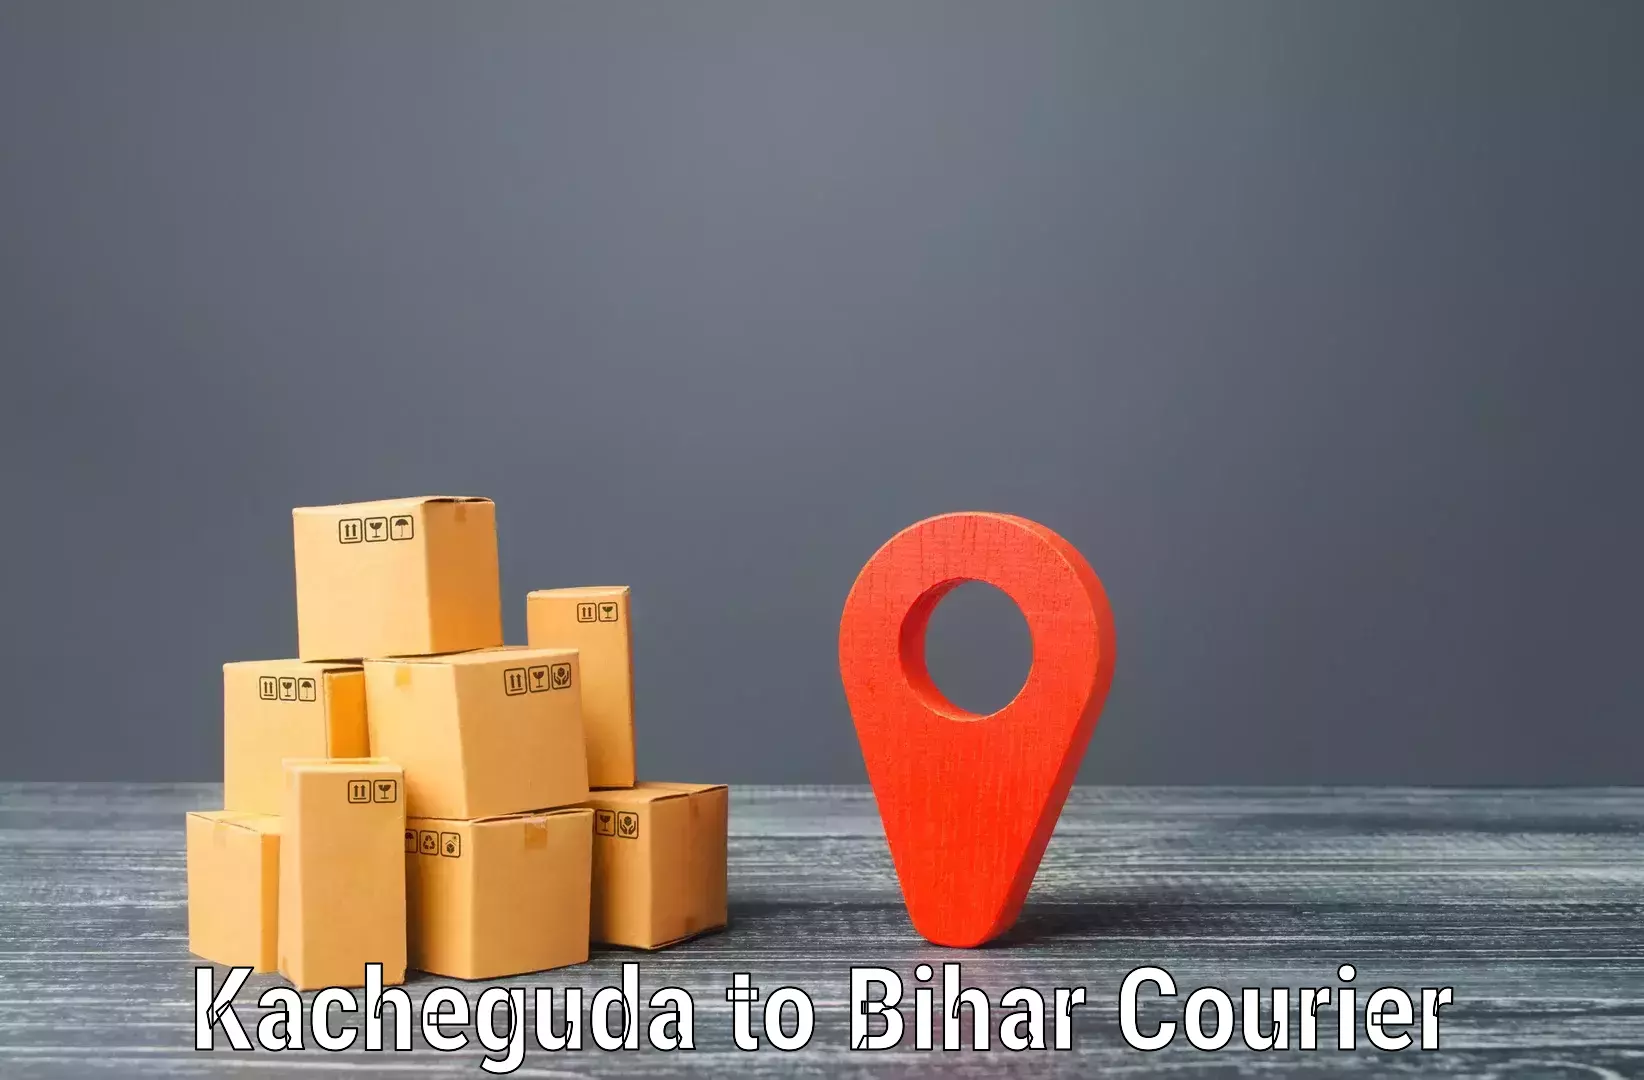 Cargo courier service Kacheguda to Ghanshyampur